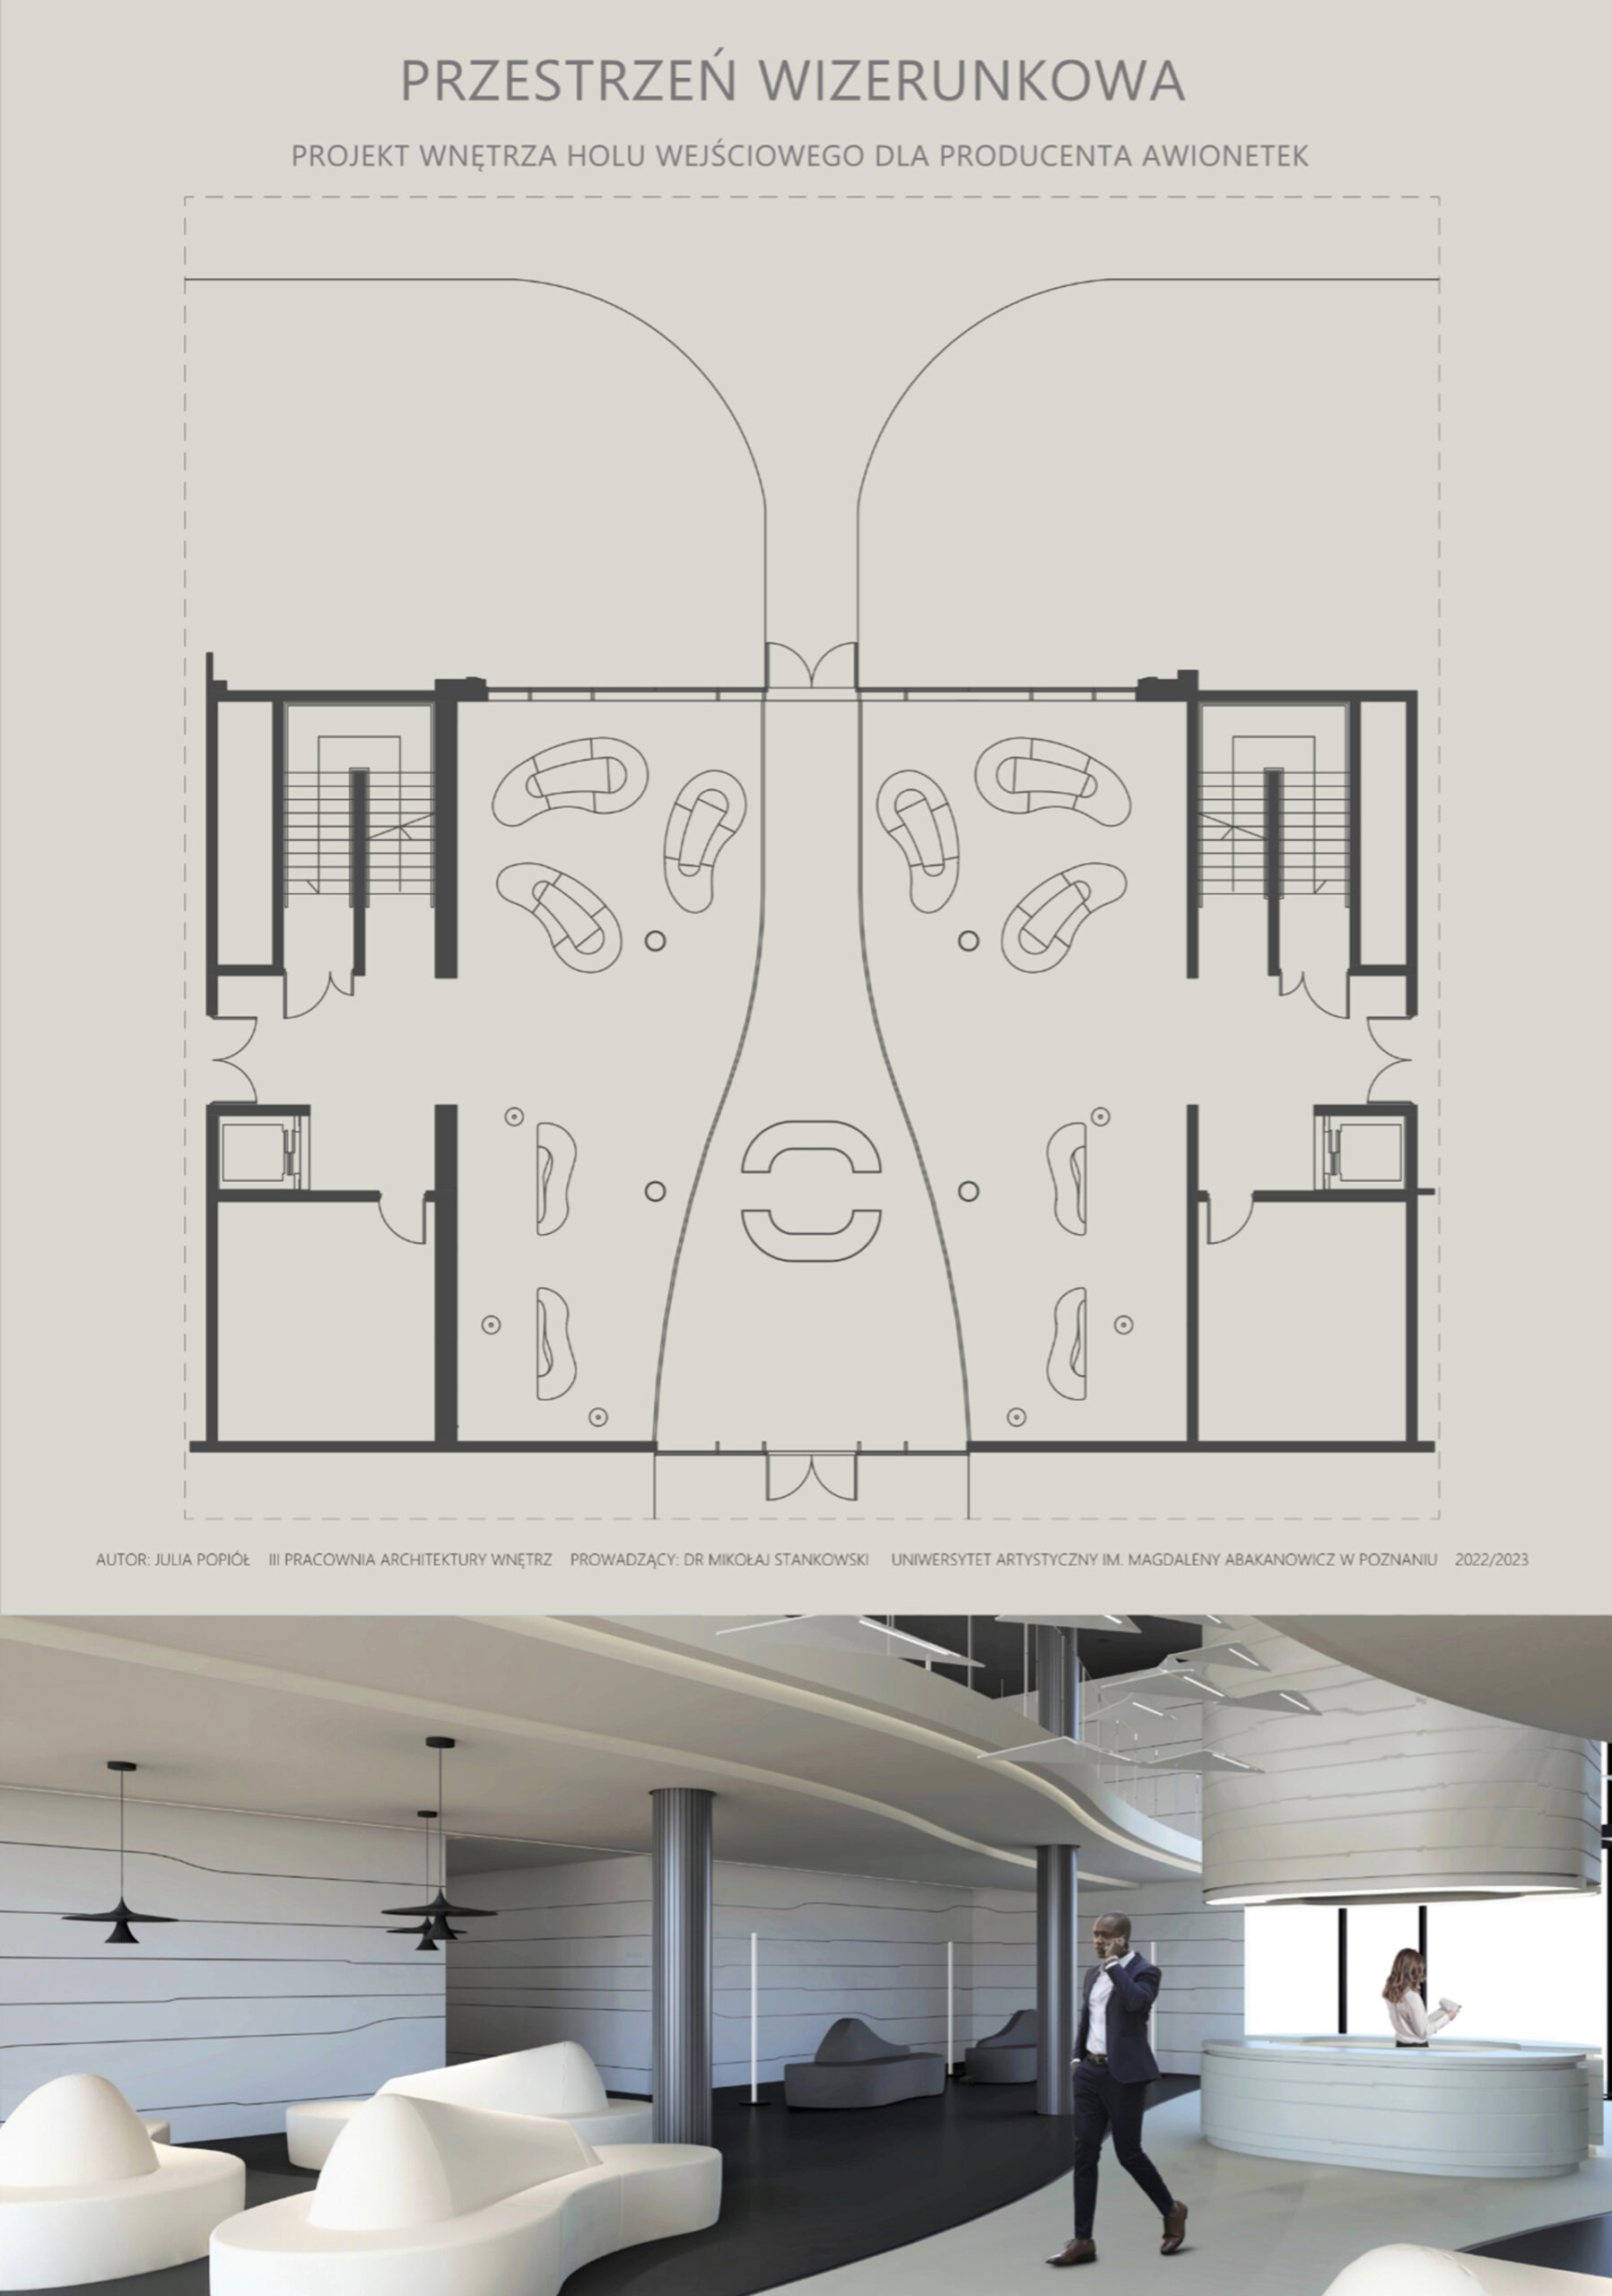 Plansza przedstawiająca rzut  holu wejściowego w budynku producenta awionetek. Kompozycja rzutu oparta na płynnych, miękkich liniach. Pod rzutem wizualizacja wnętrza.